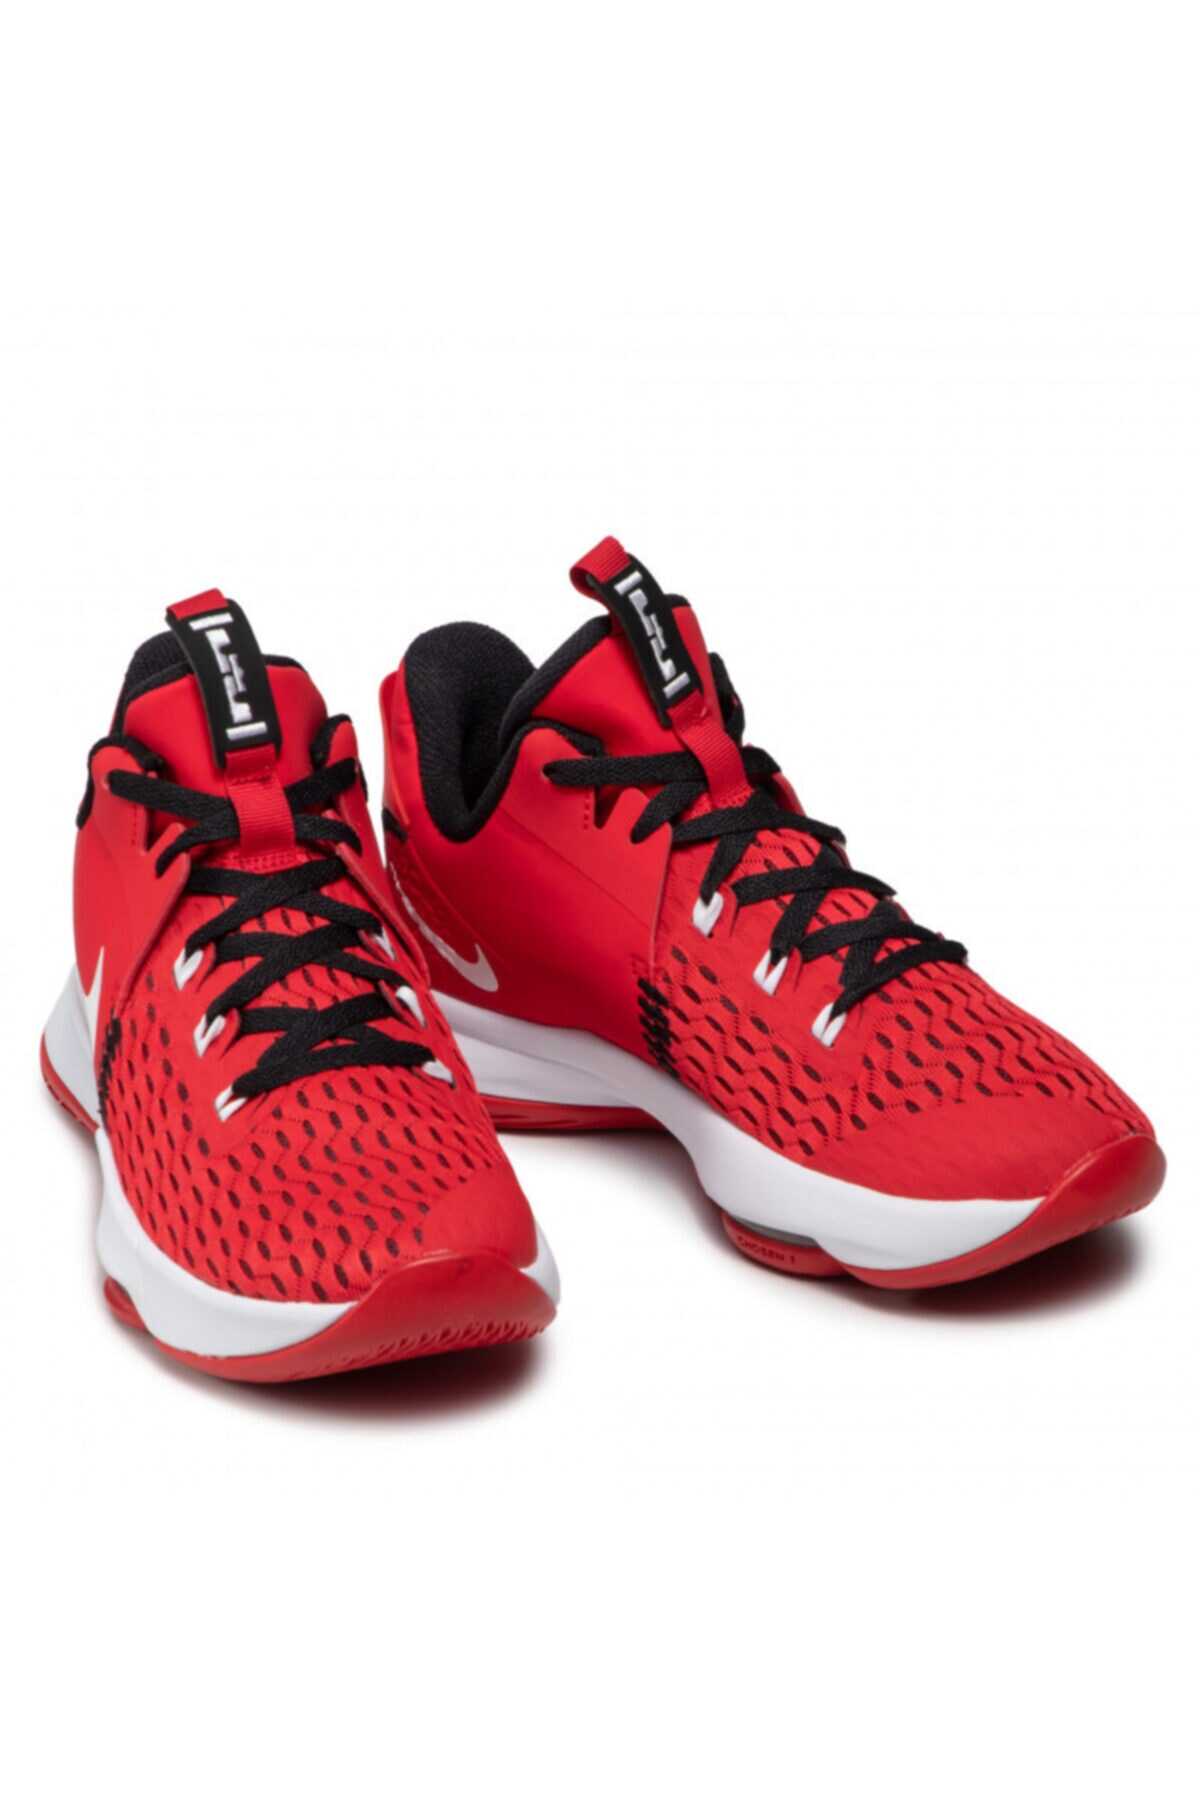 کفش بسکتبال مردانه قرمز برند Nike 